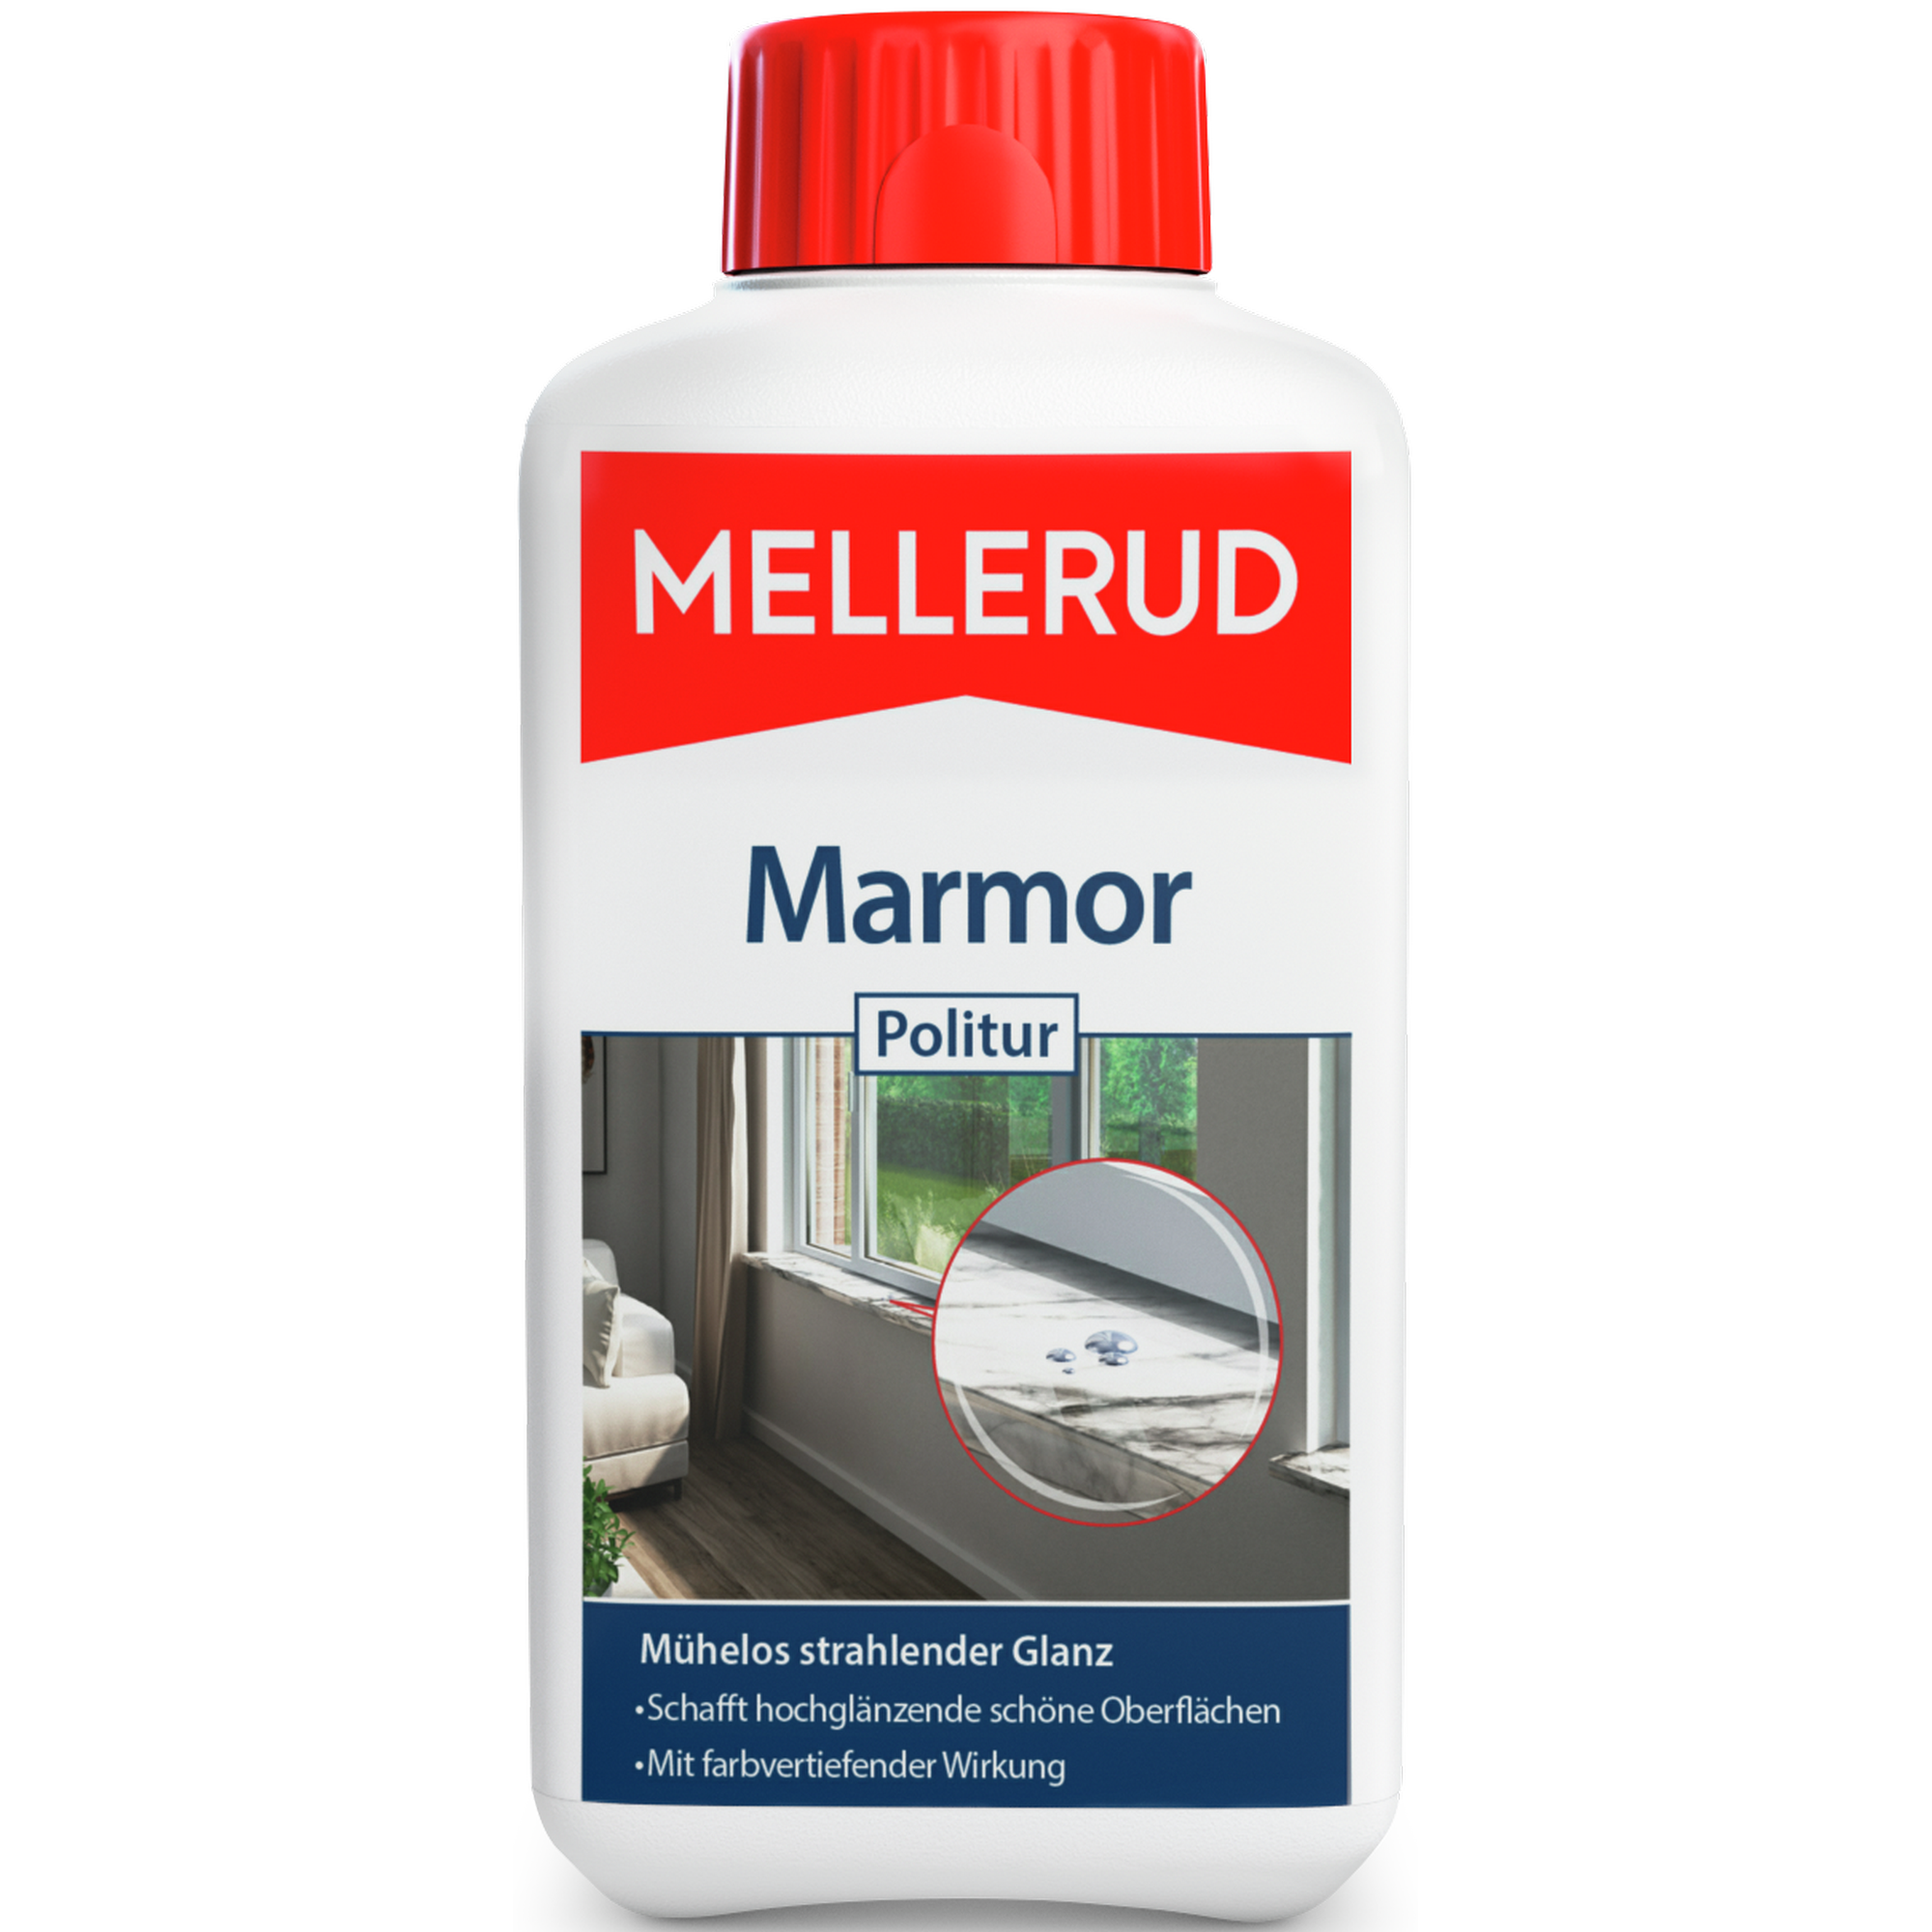 Marmorpolitur "Spezialpflege" 500 ml + product picture